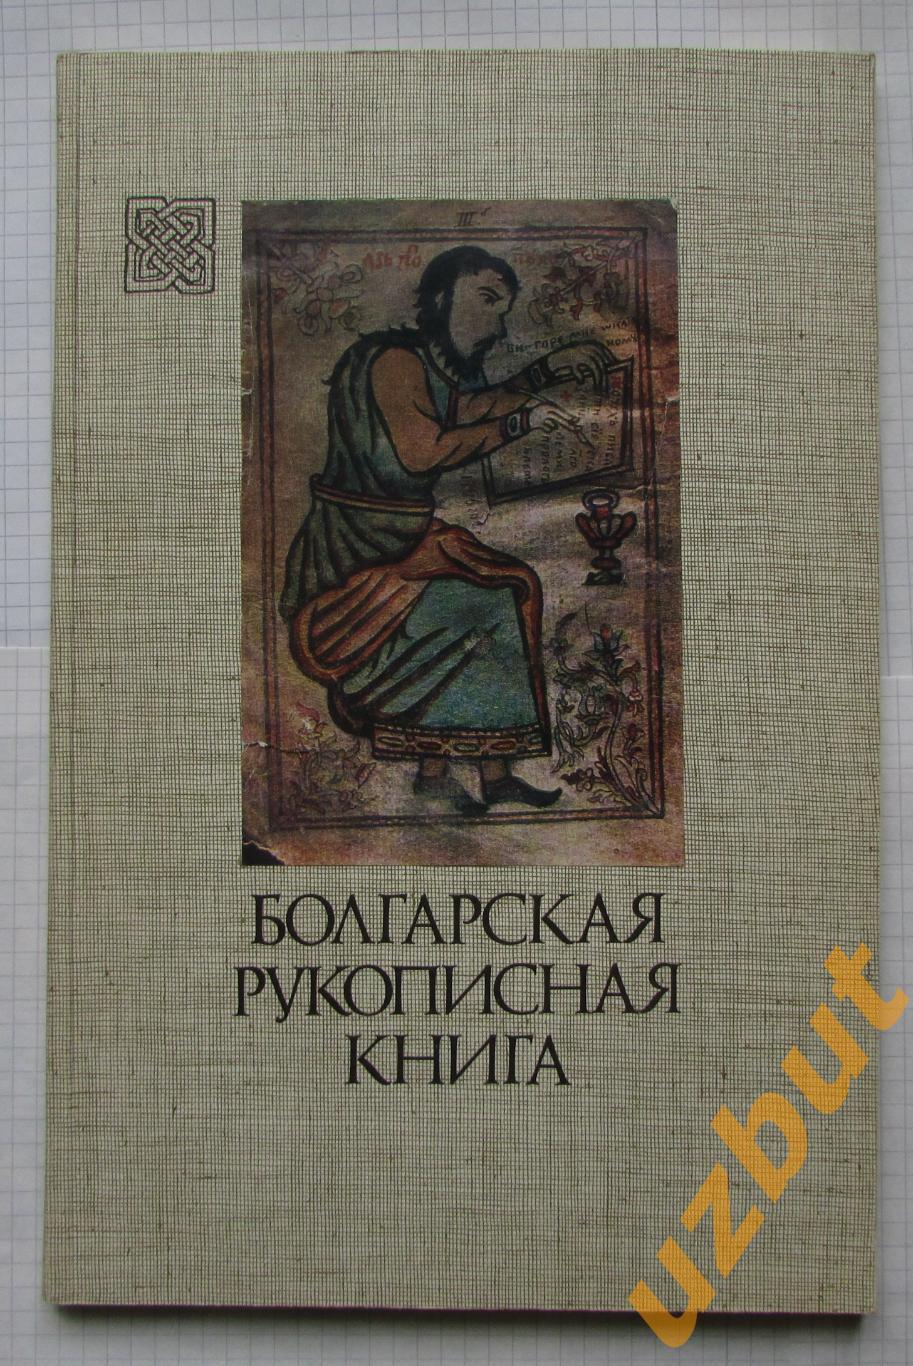 Болгарская рукописная книга каталог выставки 1978